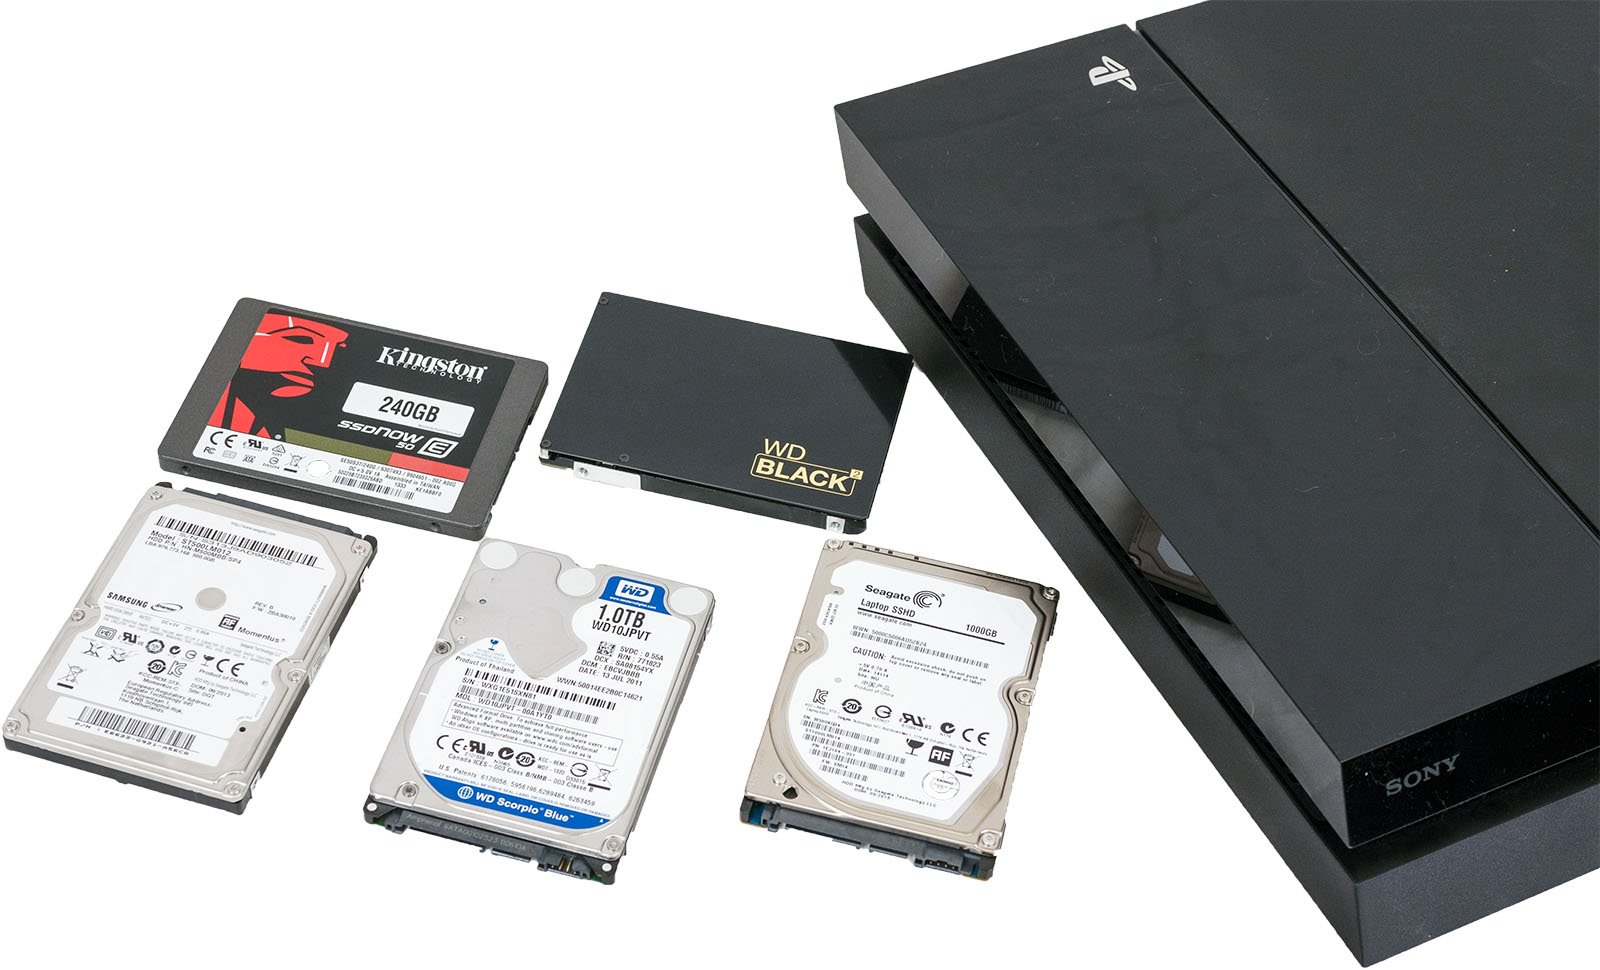 Seagate Game Drive : ce disque dur externe 4 To est presque à